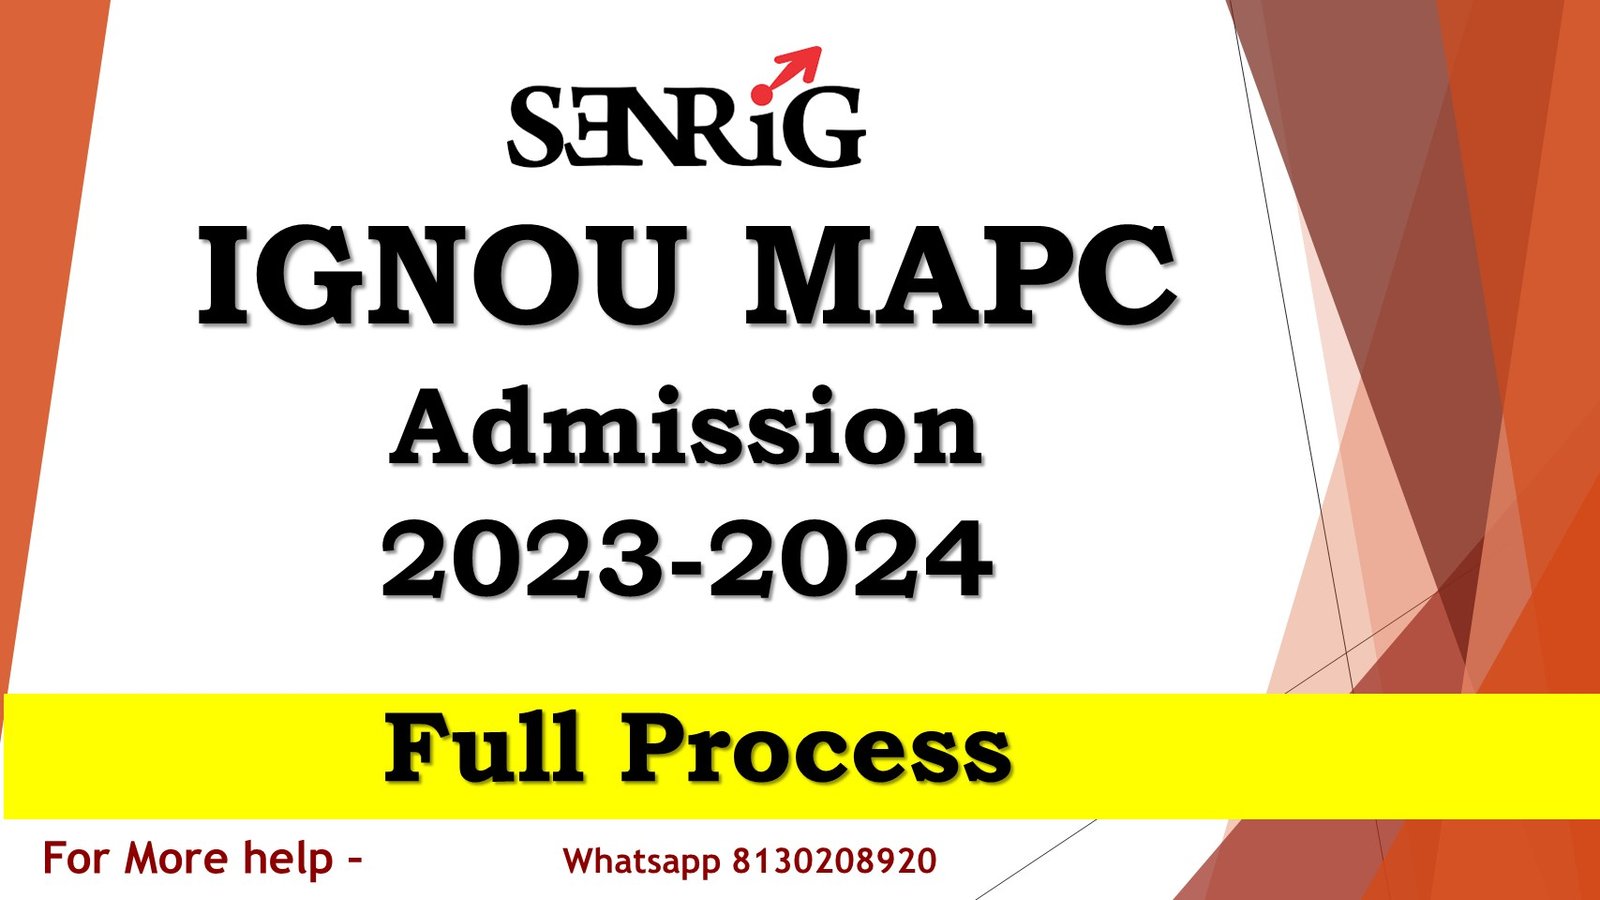 IGNOU MAPC Admission 2023 24 